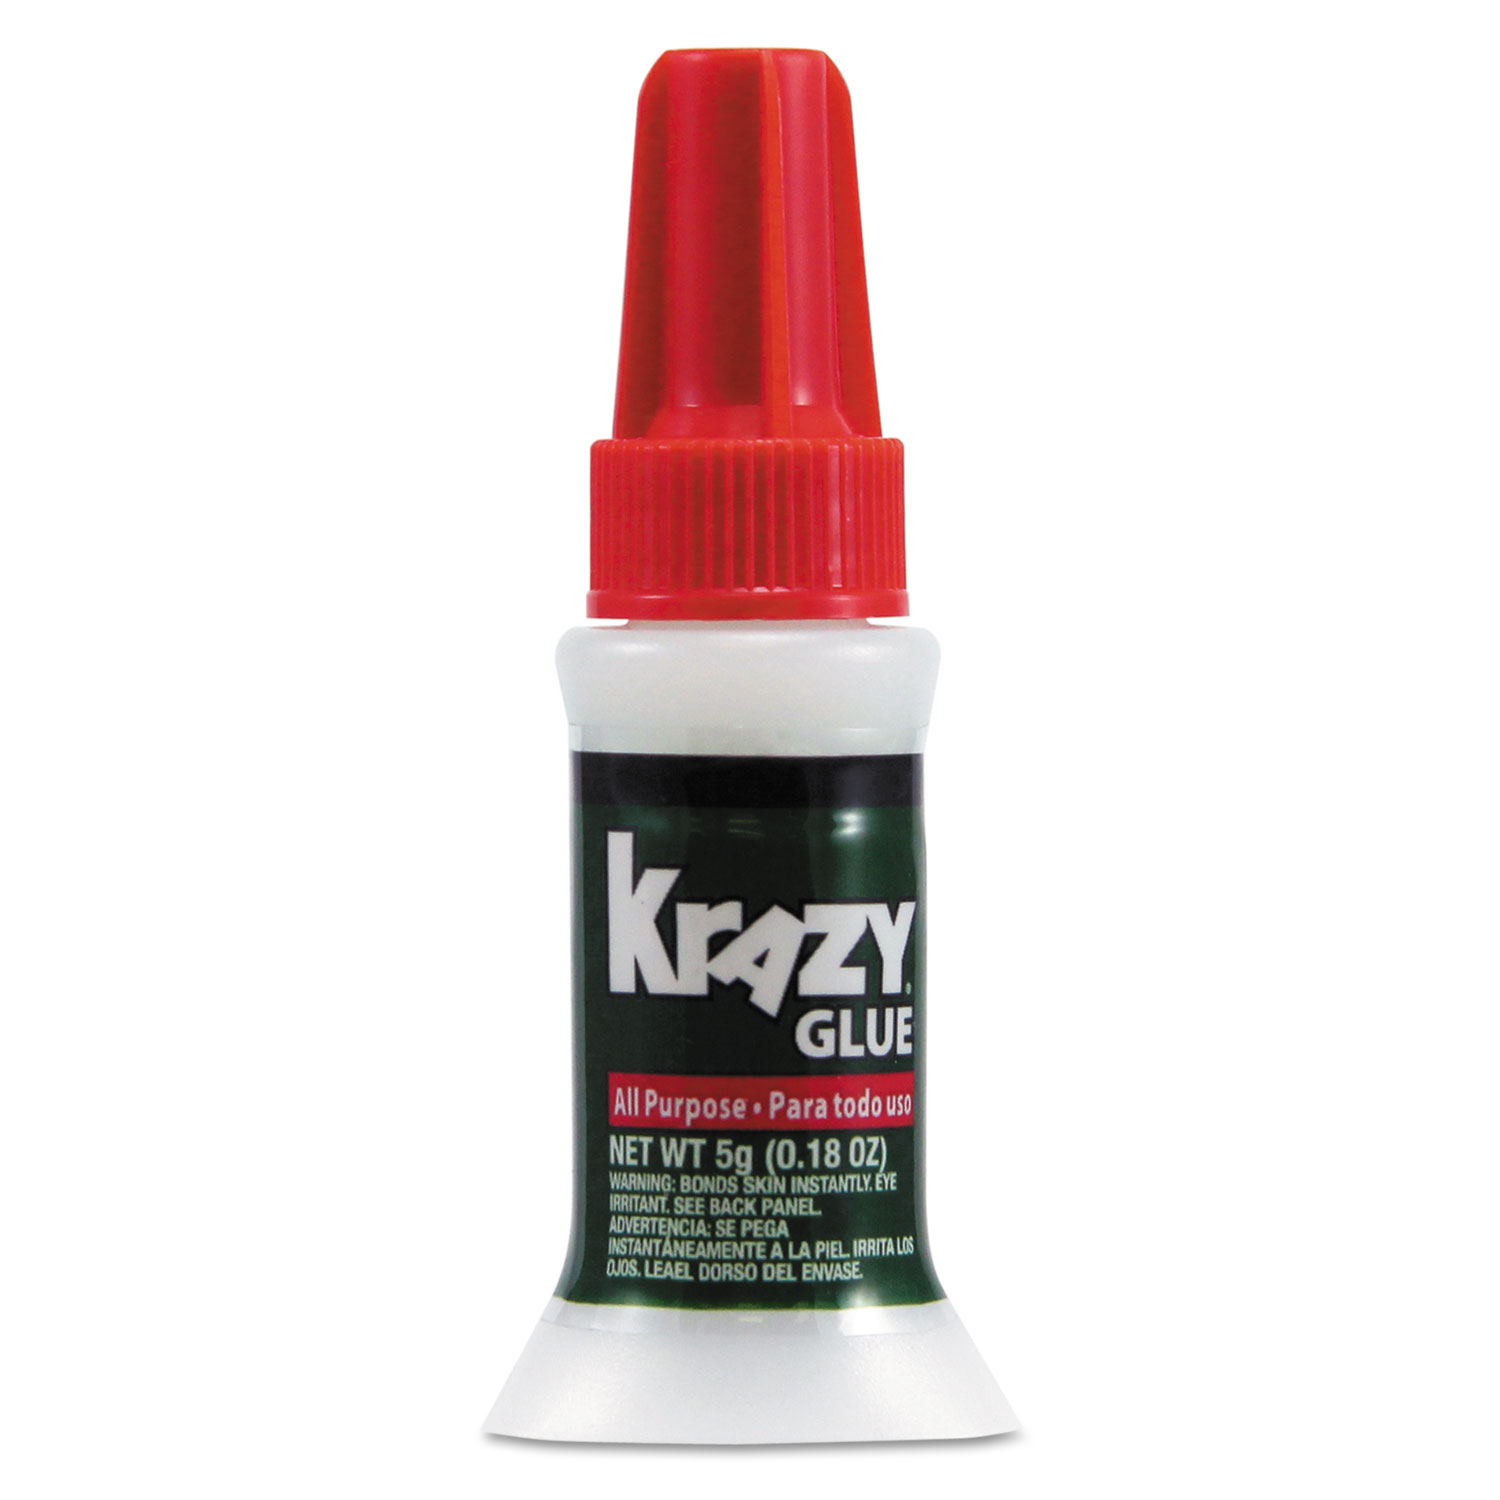 Krazy Glue Super Glue, All Purpose, Brush - 0.18 oz